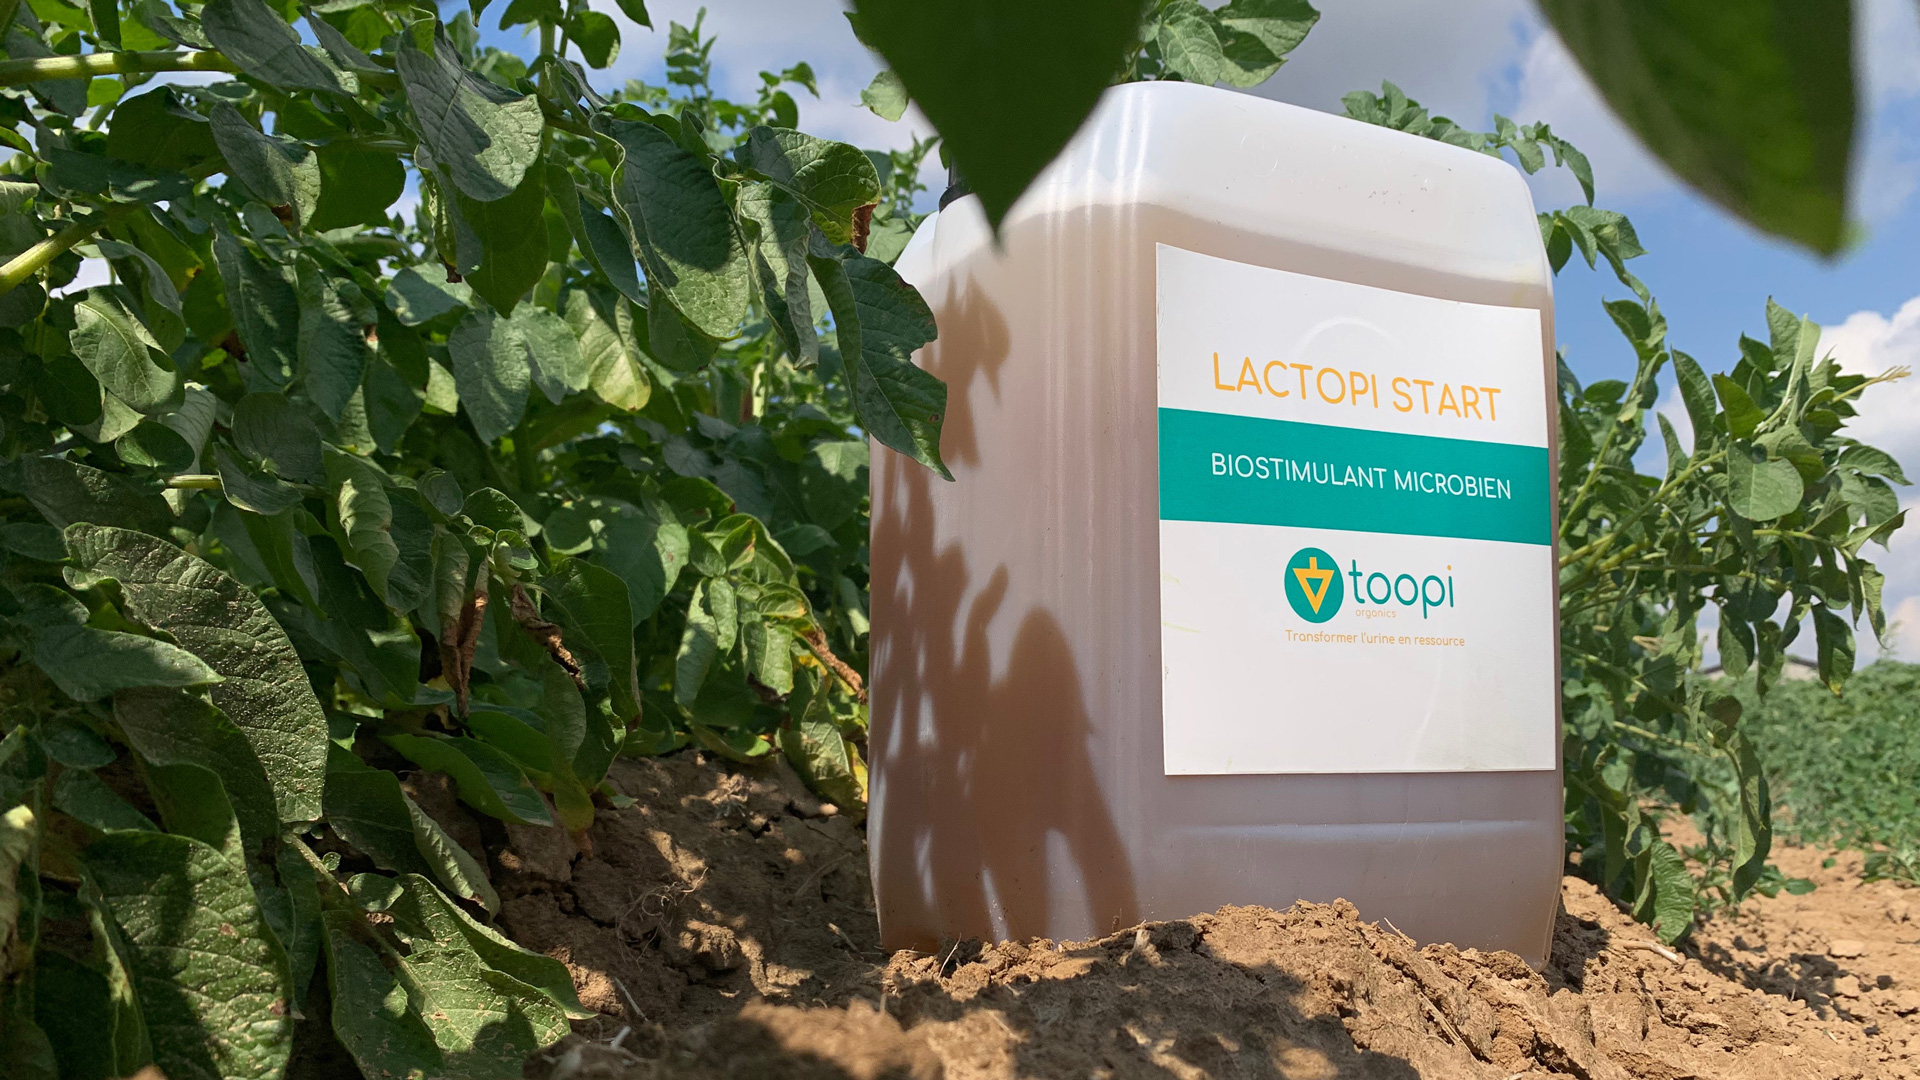 Lactopi Start Urine-based biostimulant